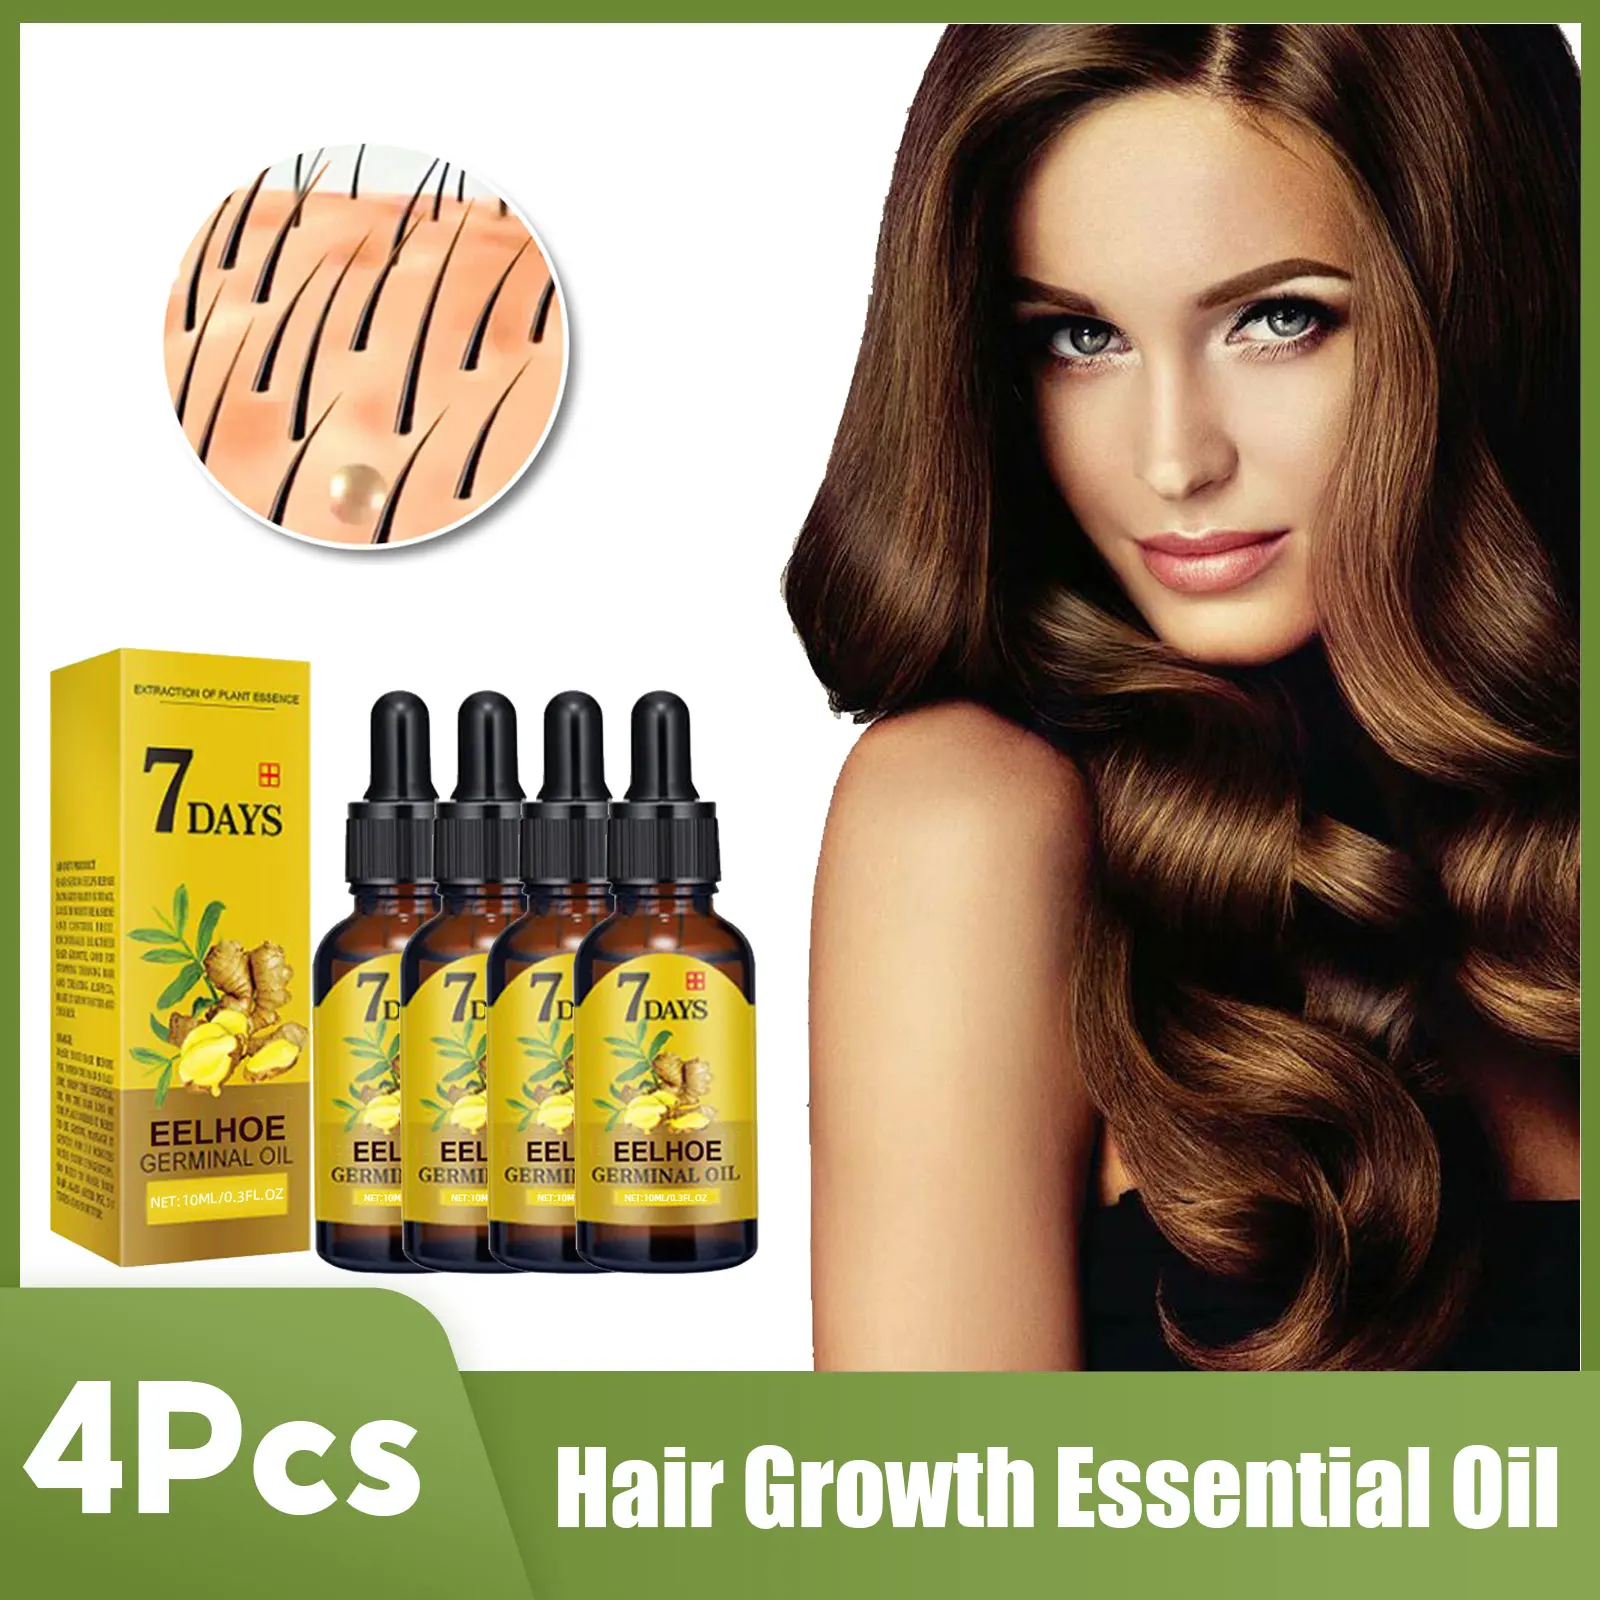 

4PCS Ginger Hair Growth Essential Oil Anti Hair Loss Serum Scalp Treatment Fast Growing Regrowth Repair Hair Follicles Essence